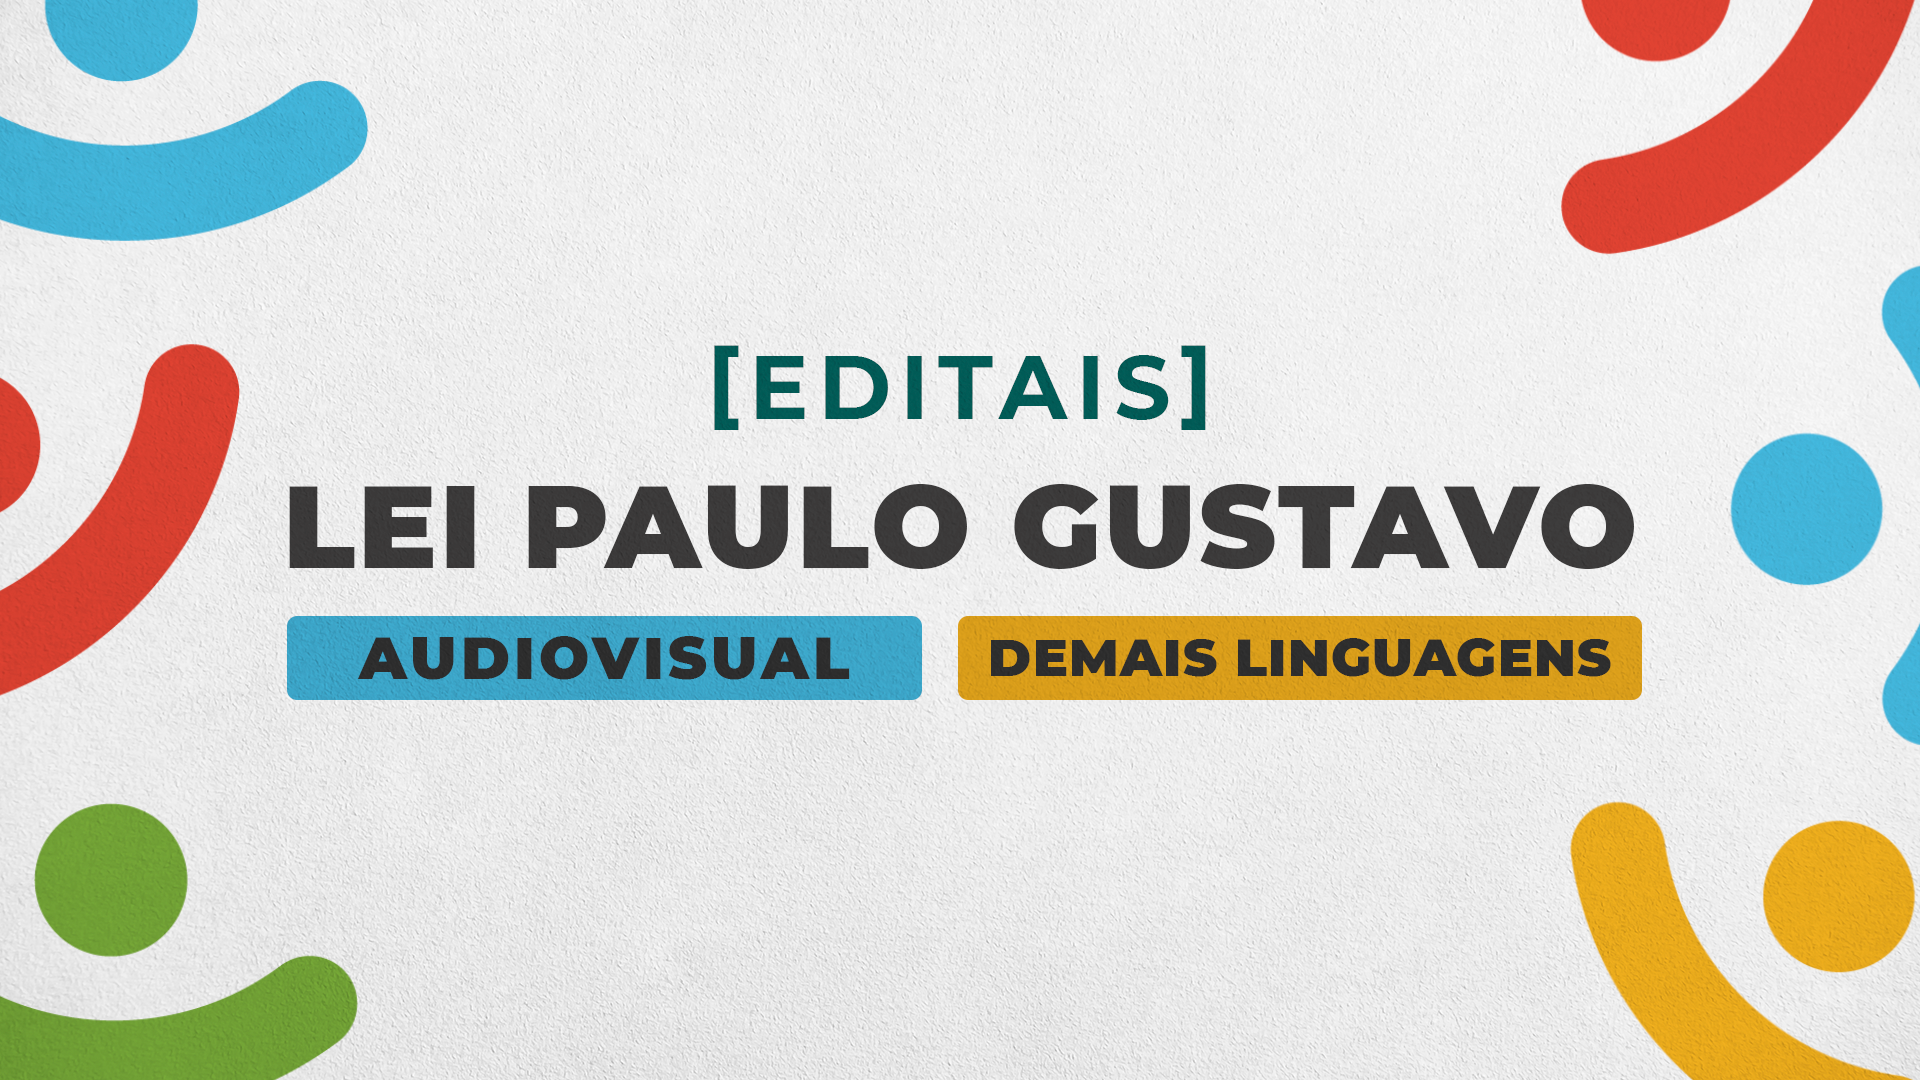 PREFEITURA DE BEZERROS DIVULGA EDITAIS DA LEI PAULO GUSTAVO NAS CATEGORIAS DE AUDIOVISUAL E DEMAIS LINGUAGENS